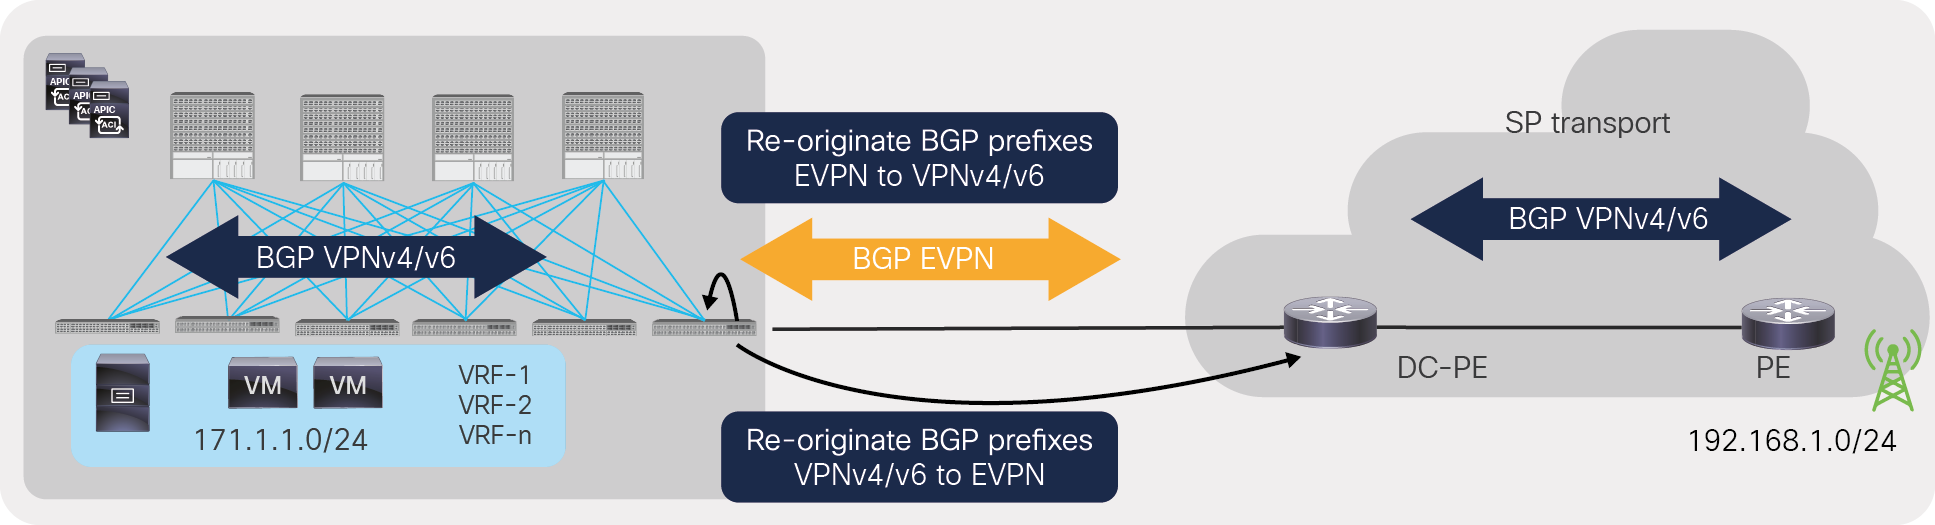 Re-originate BGP EVPN to VPNv4/v6, and VPNv4/v6 to EVPN prefixes on ACI border leaf